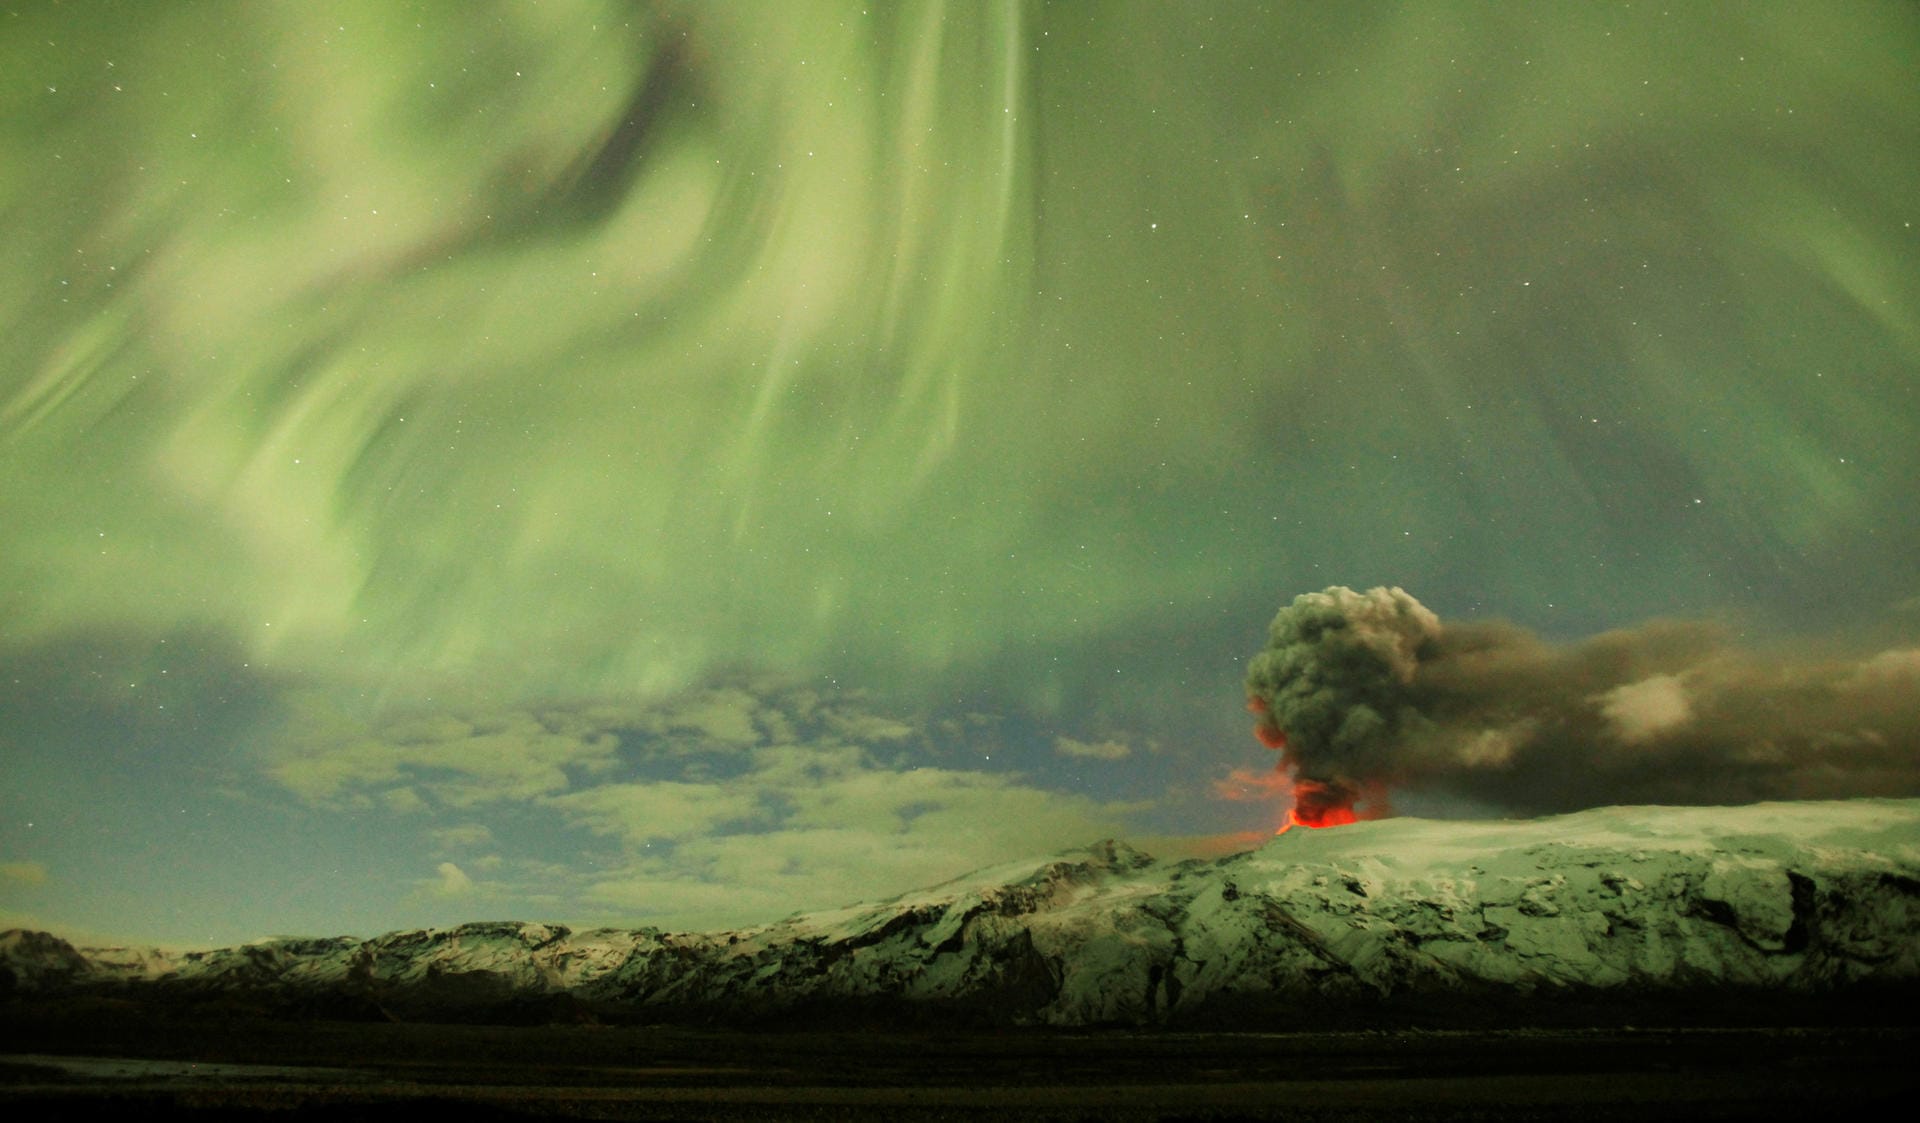 April 2010: Auf Island bricht der Vulkan mit dem schwer auszusprechenden Namen Eyjafjallajokull auf. Wegen der Vulkanasche kommt der Flugverkehr in Nord- und Mitteleuropa für Tage zum Erliegen. Im Bild: Nordlichter über dem Eyjafjallajokull.